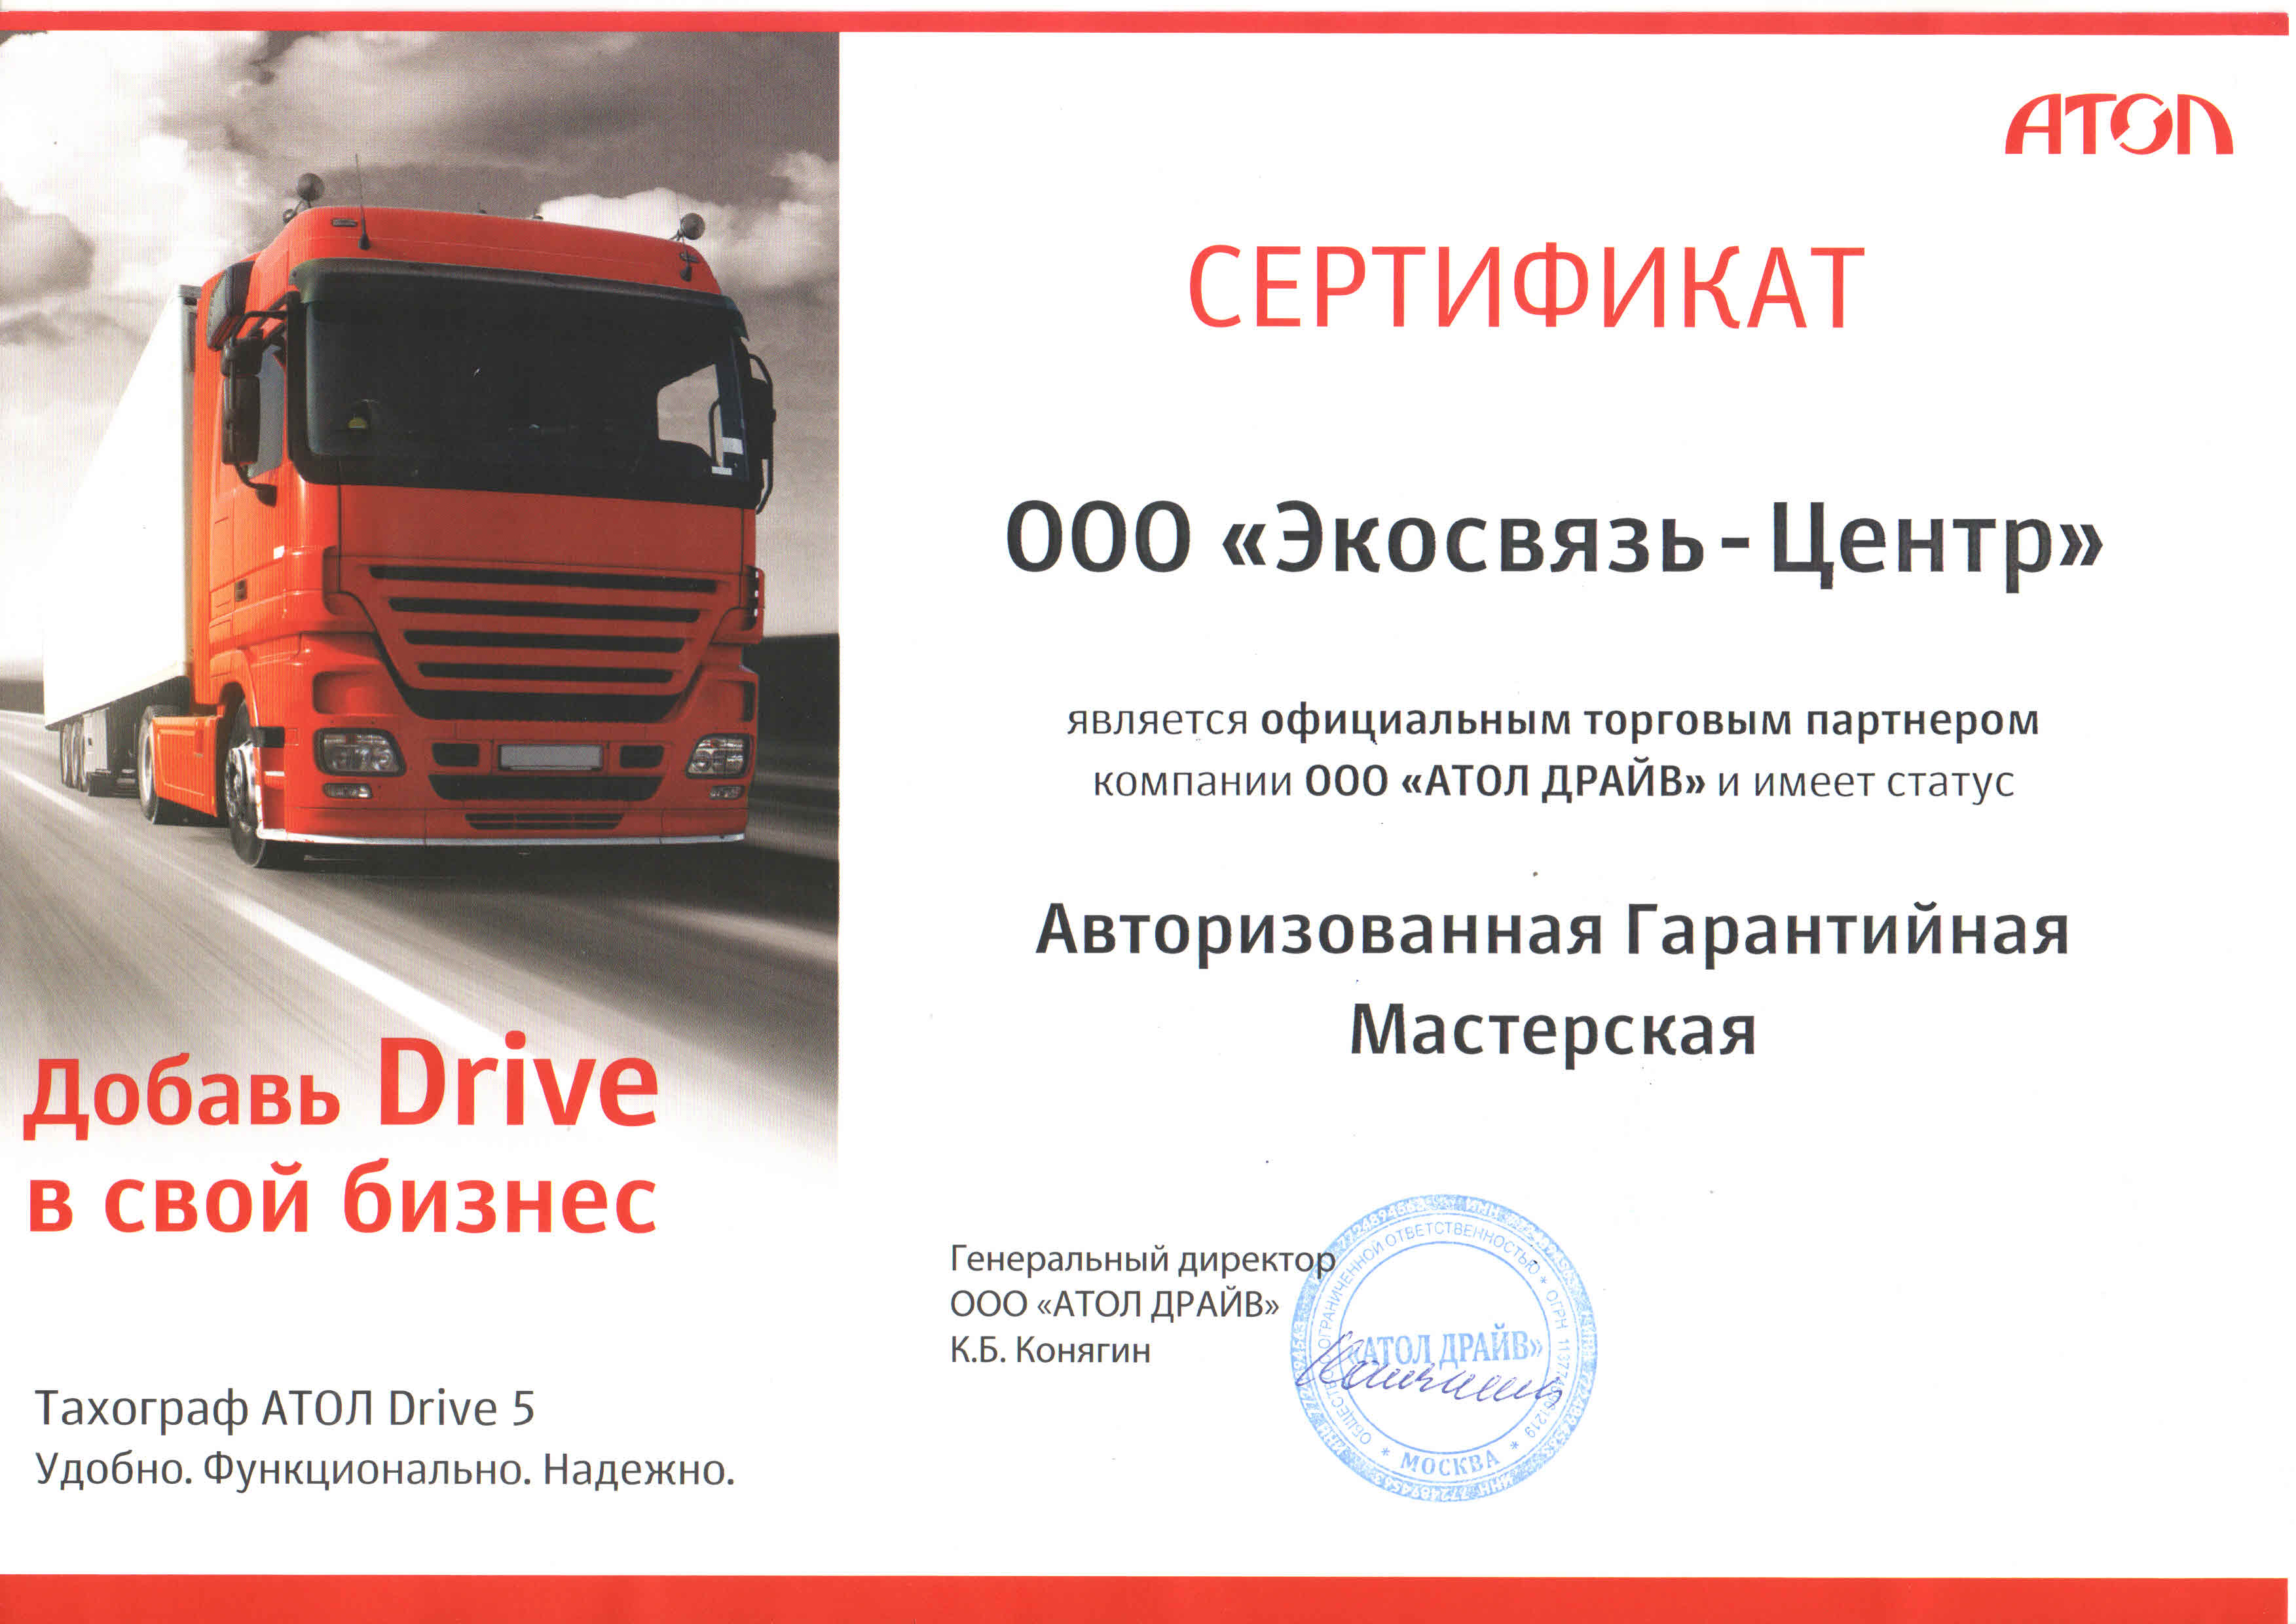 Сертификат Авторизованной сервисной мастерской АТОЛ 2015